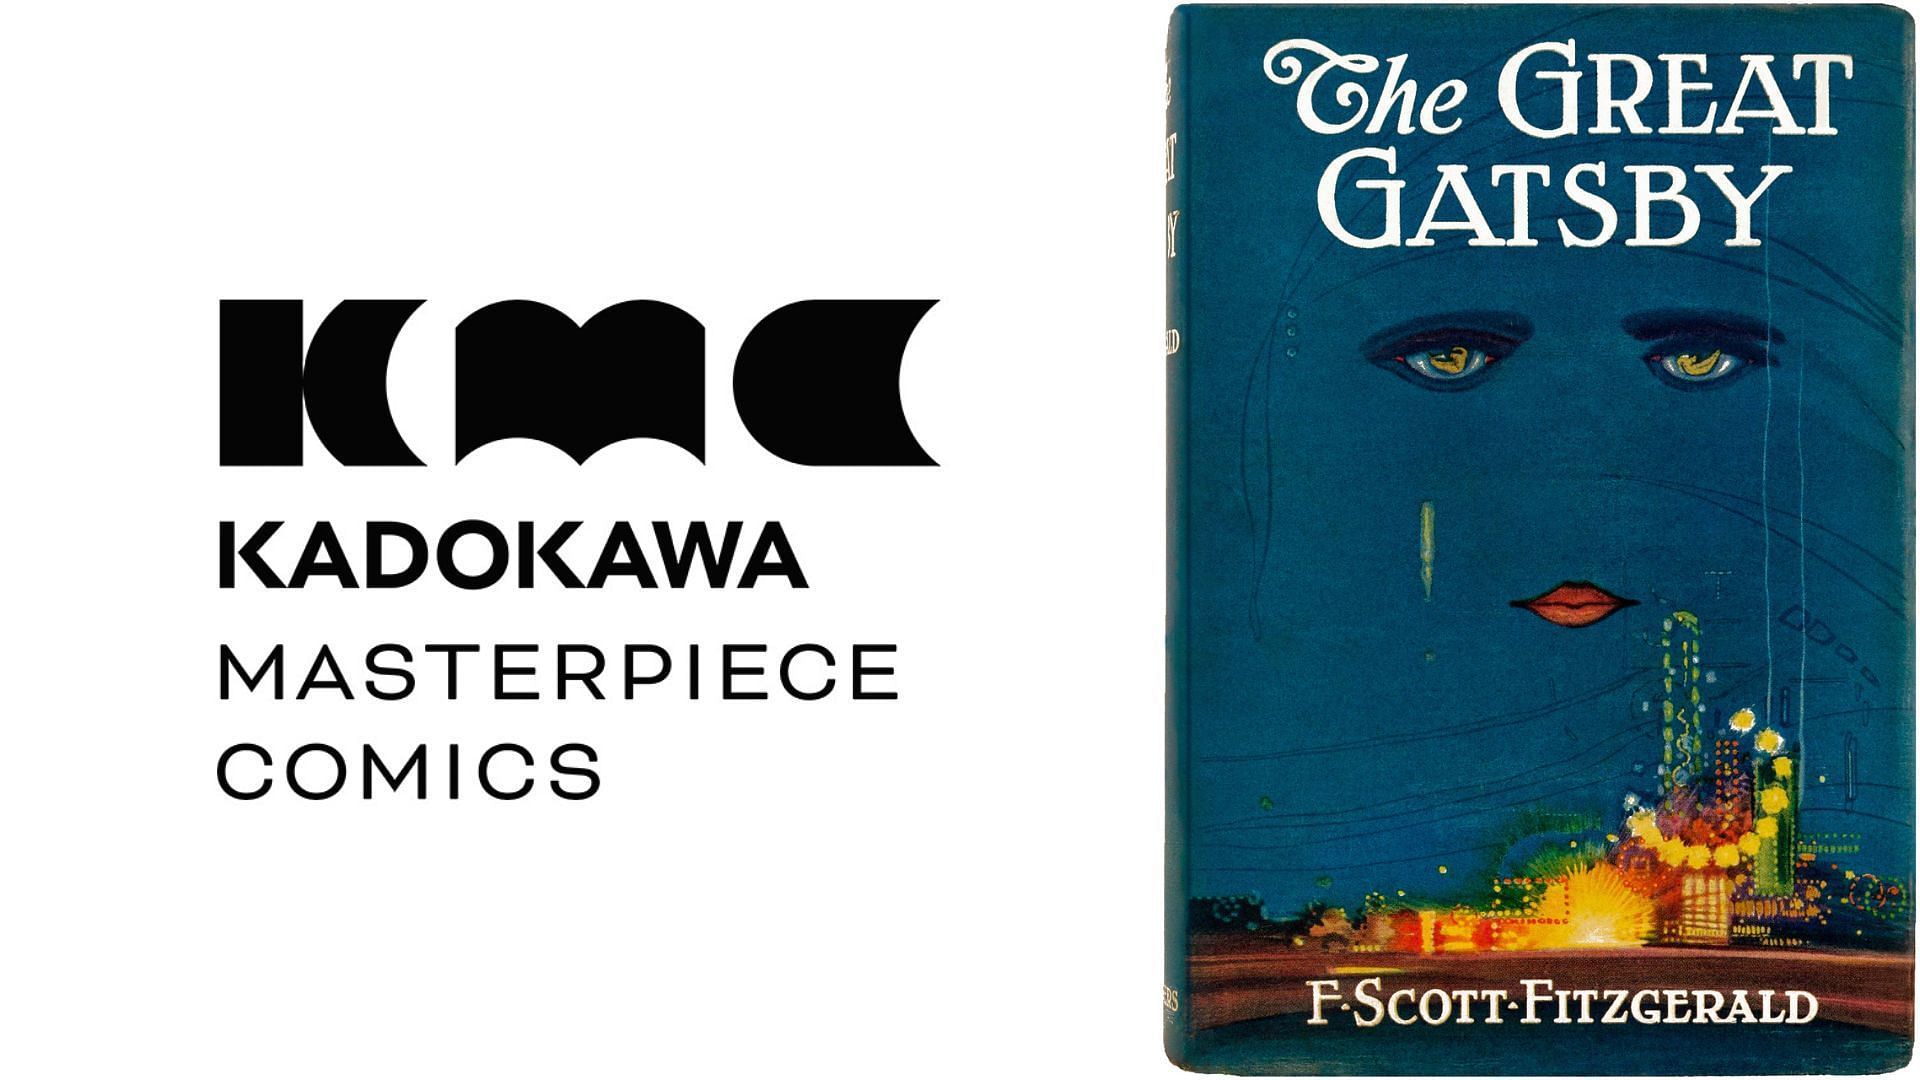 The Great Gatsby and other literary classics get manga adaptations by Kadokawa